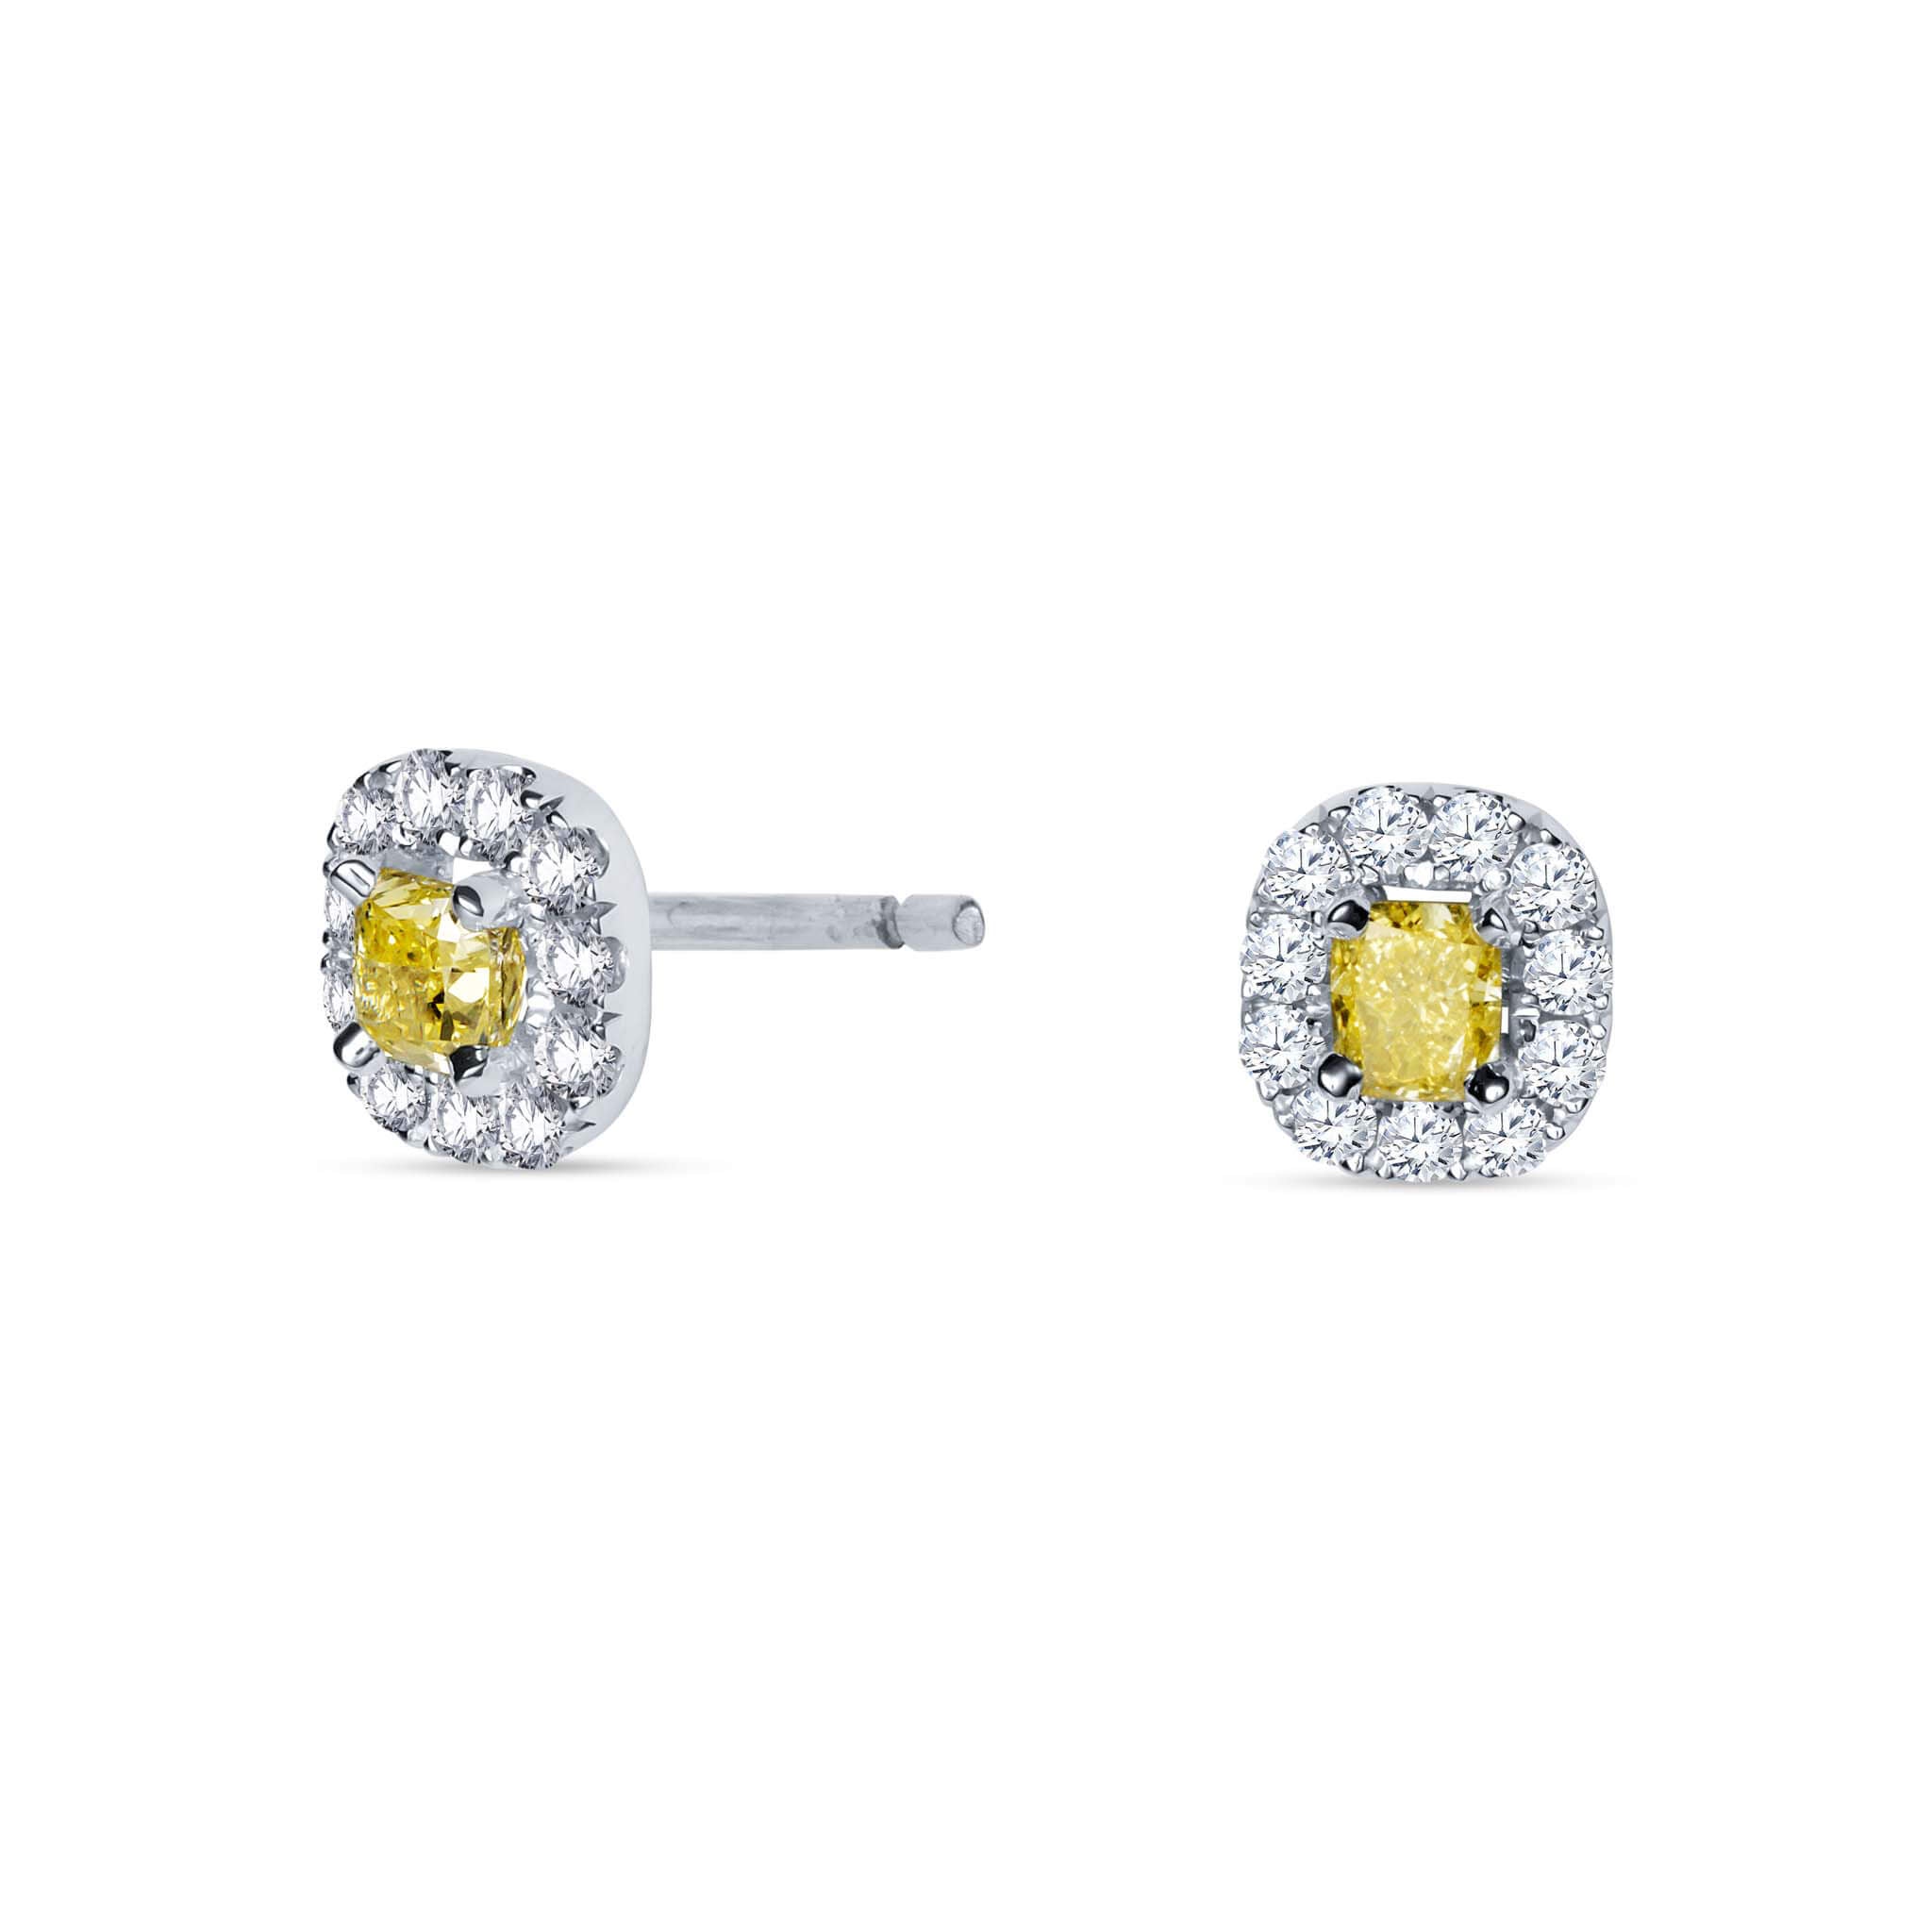 Kolczyki z żółtymi diamentami Fancy Yellow - 1,19 ct